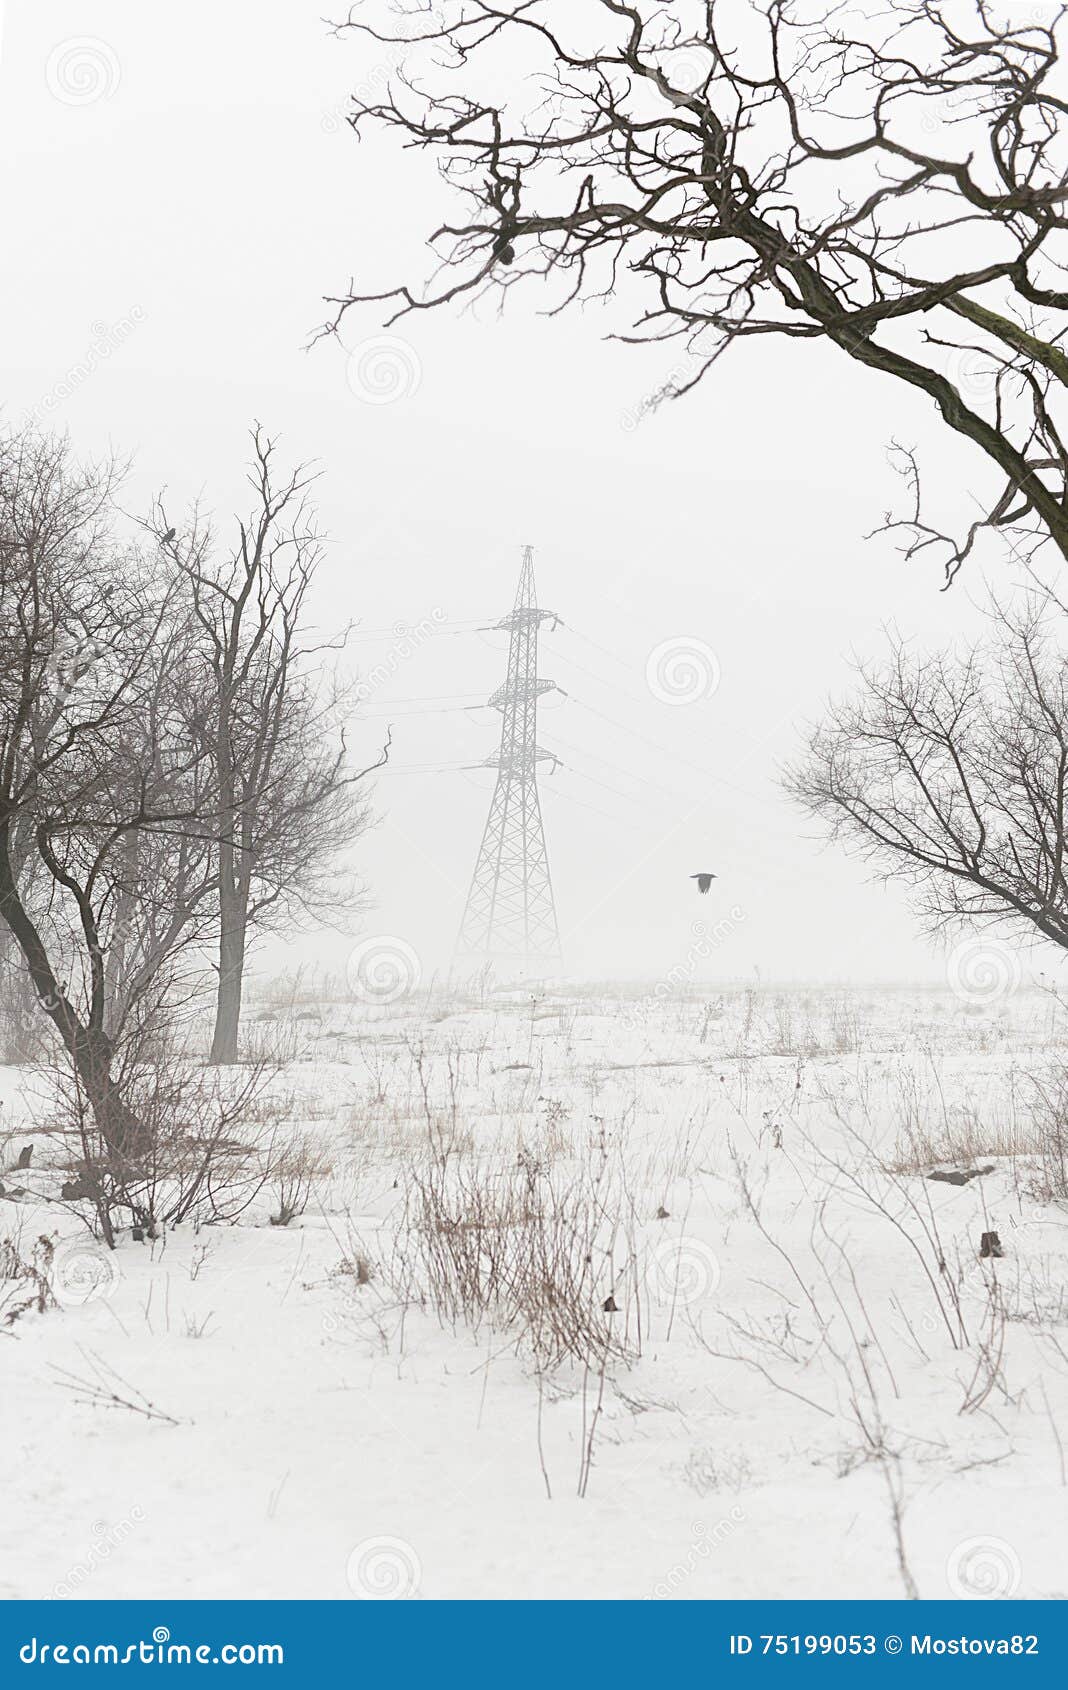 lugansk region in winter in foggy day